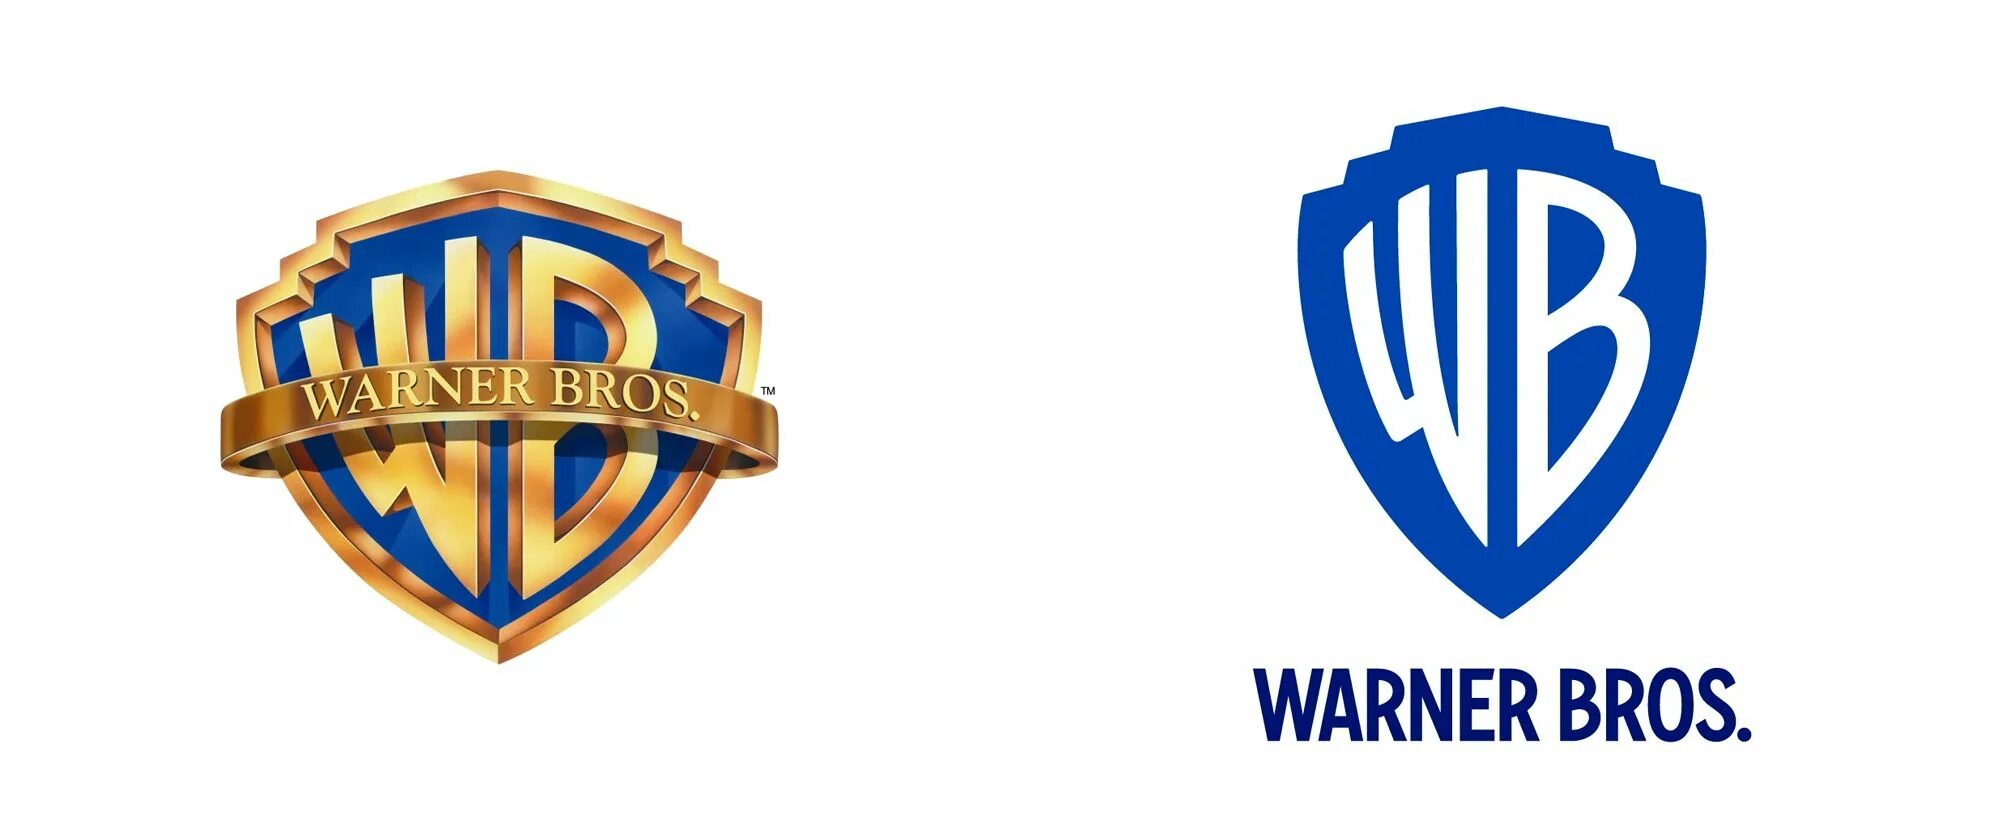 Варнер брос. Ворнер БРОС. WB логотип. Логотип ворнер бразерс. Кинокомпания Warner Bros.